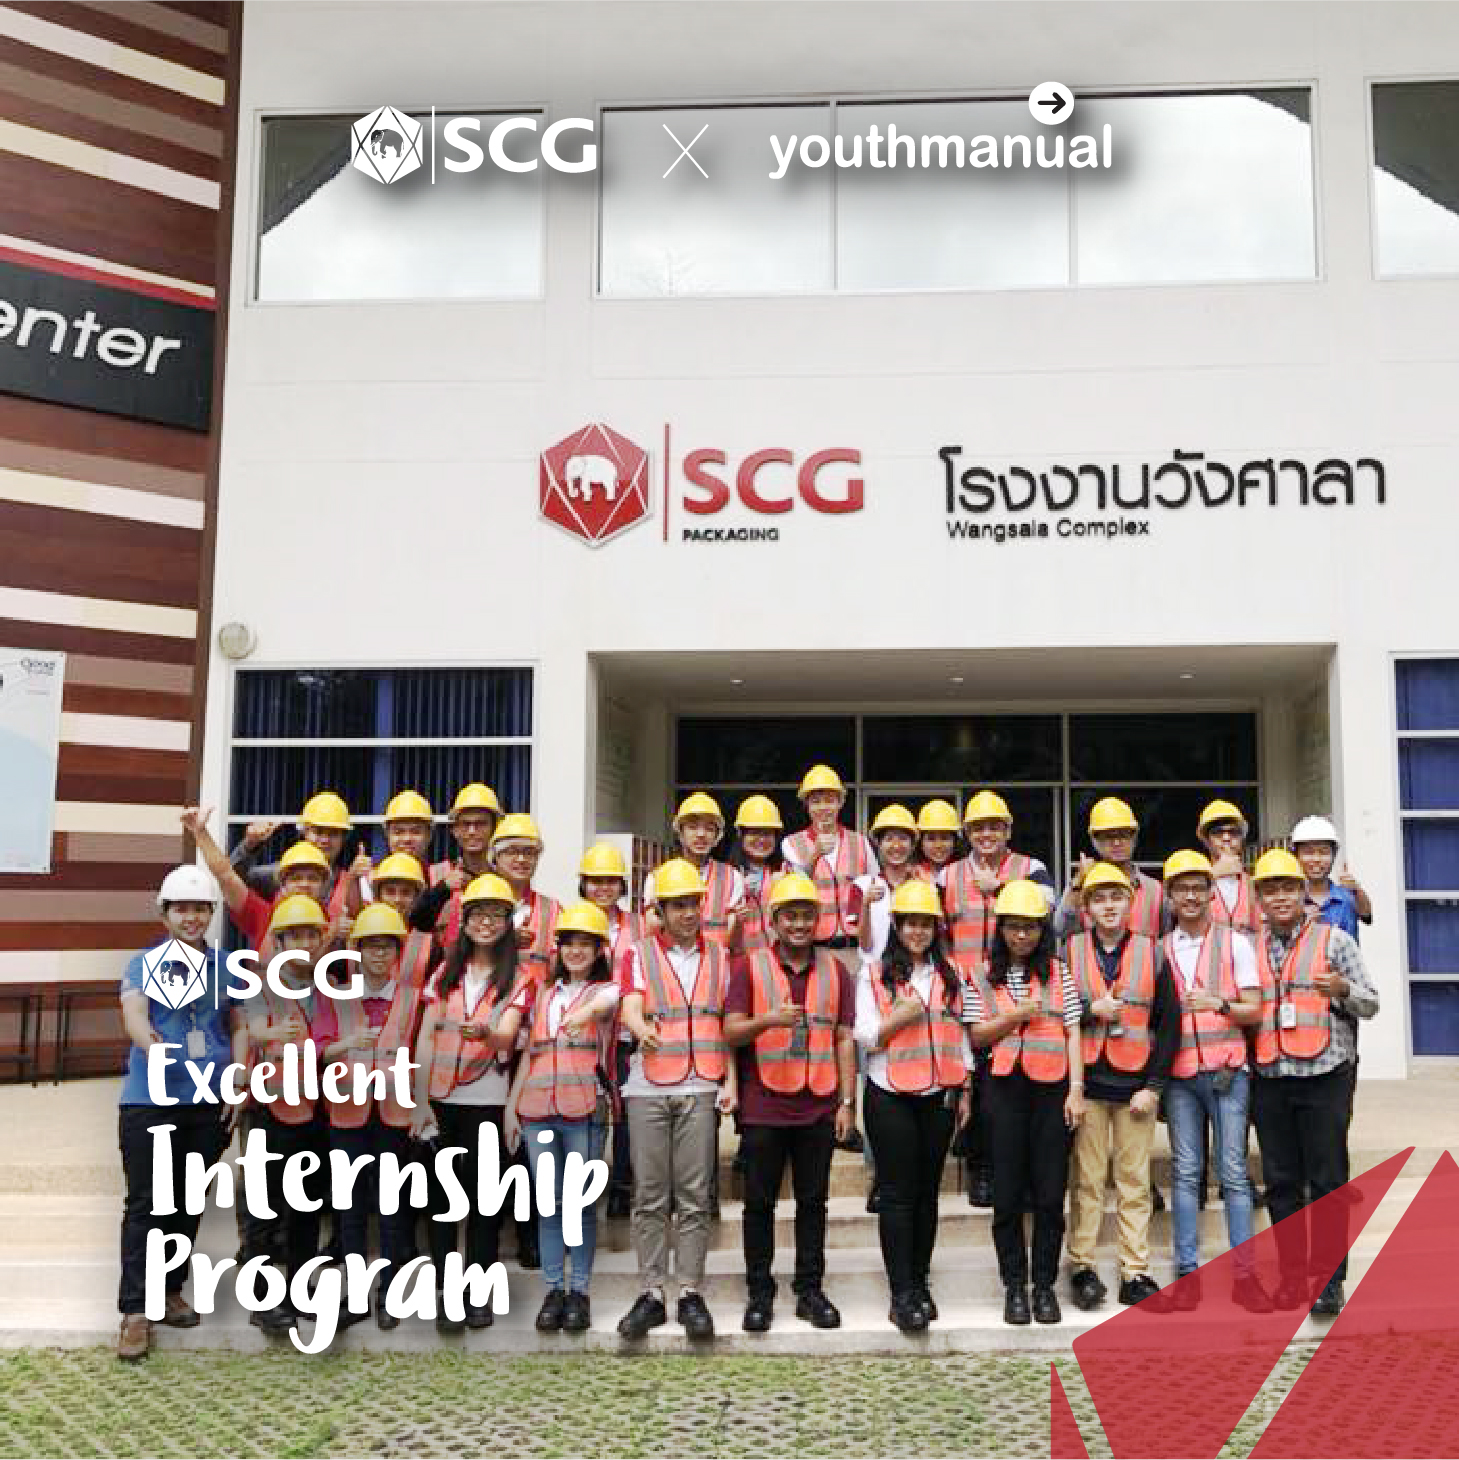 scg excellence internship 2018